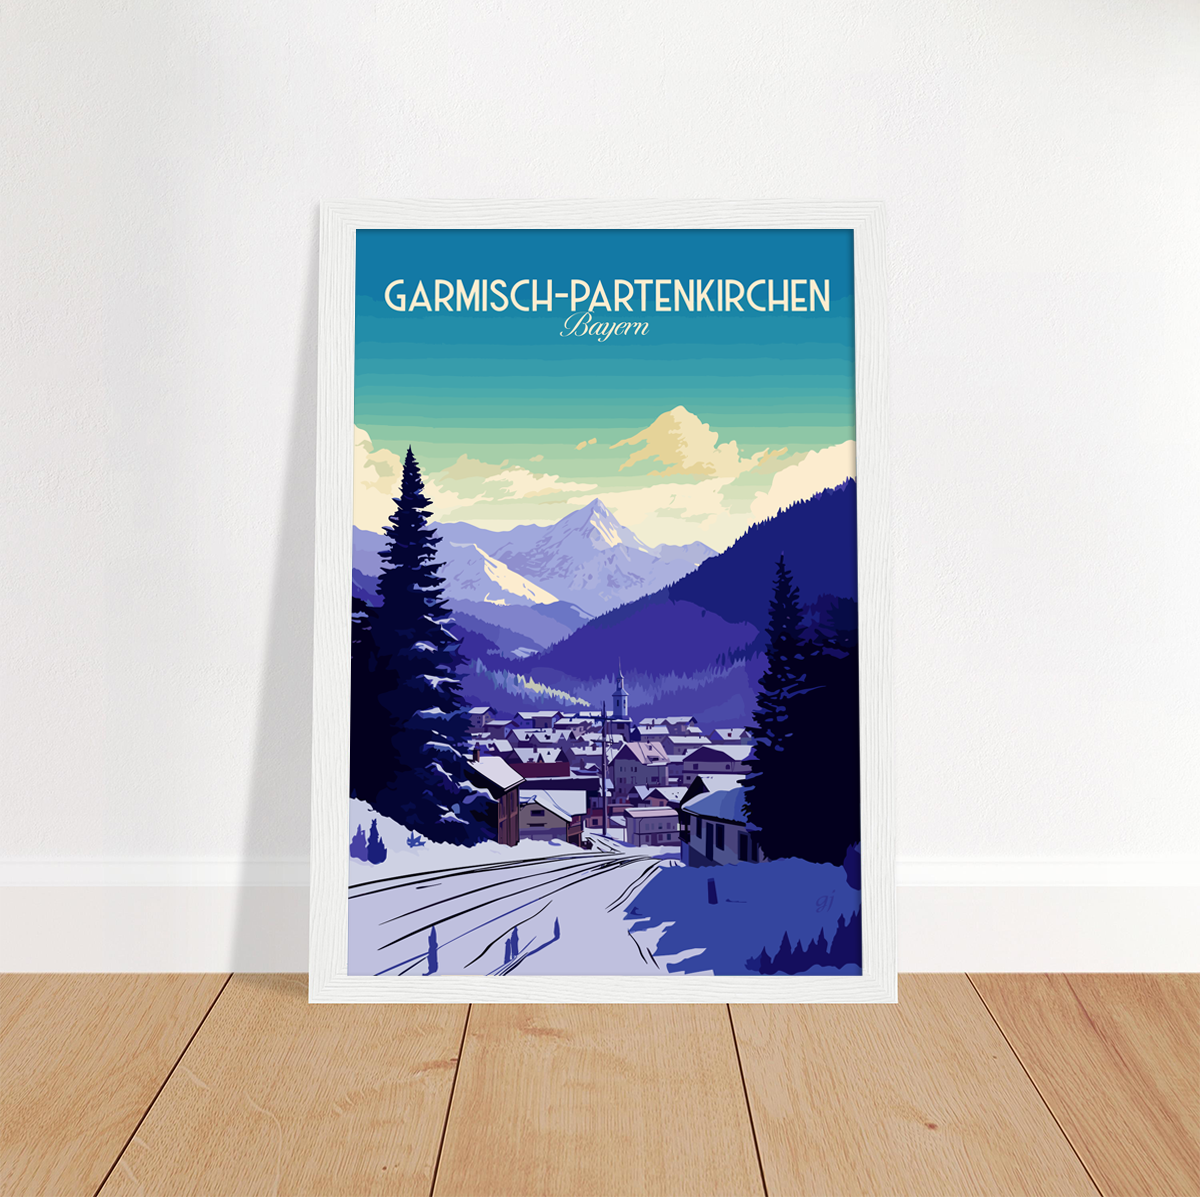 Garmisch-Partenkirchen poster by bon voyage design